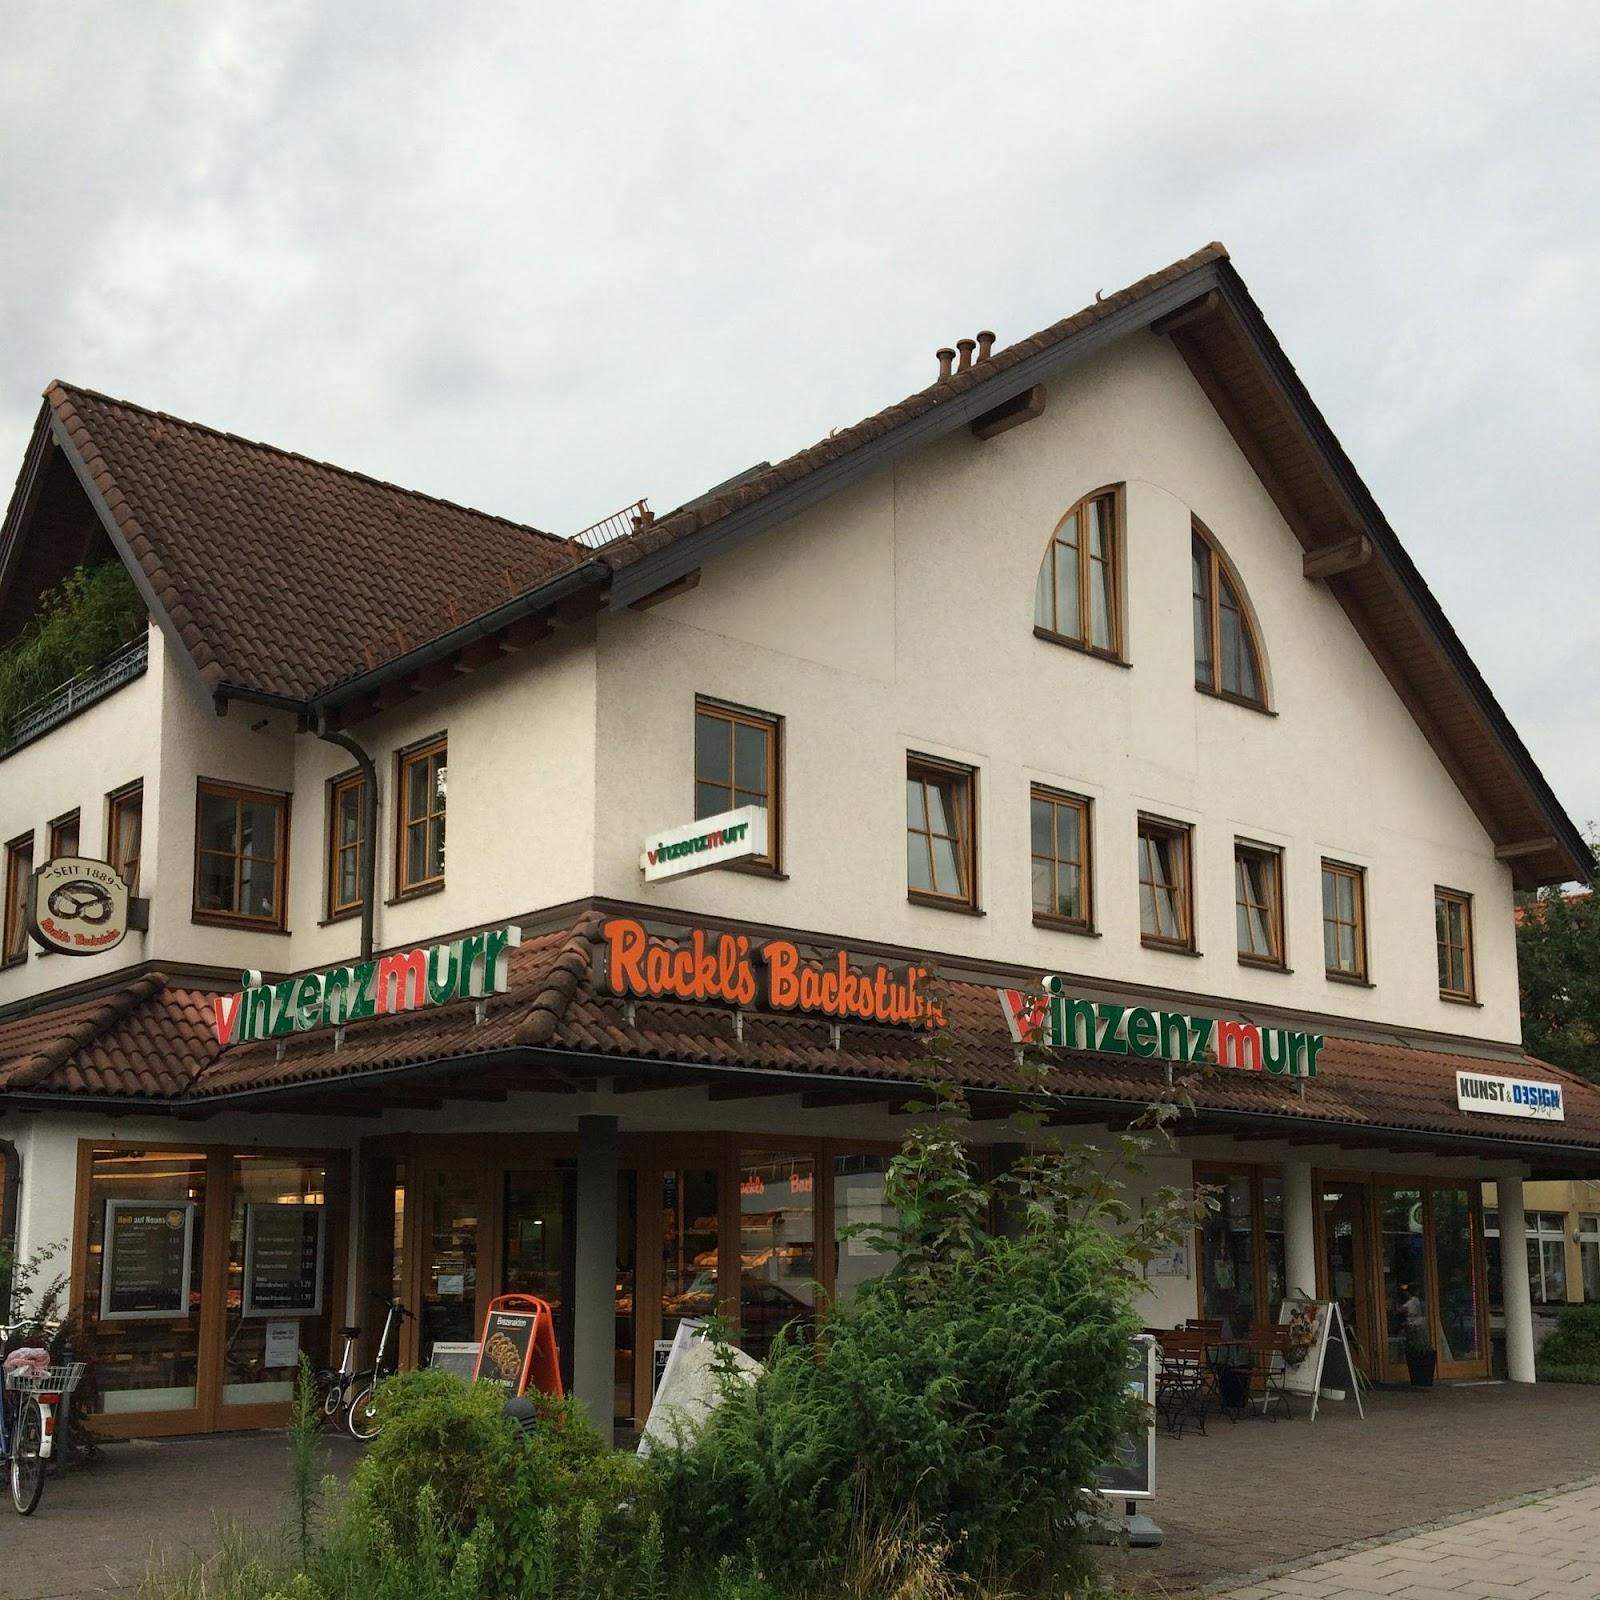 Restaurant "Vinzenzmurr Metzgerei -" in Eichenau